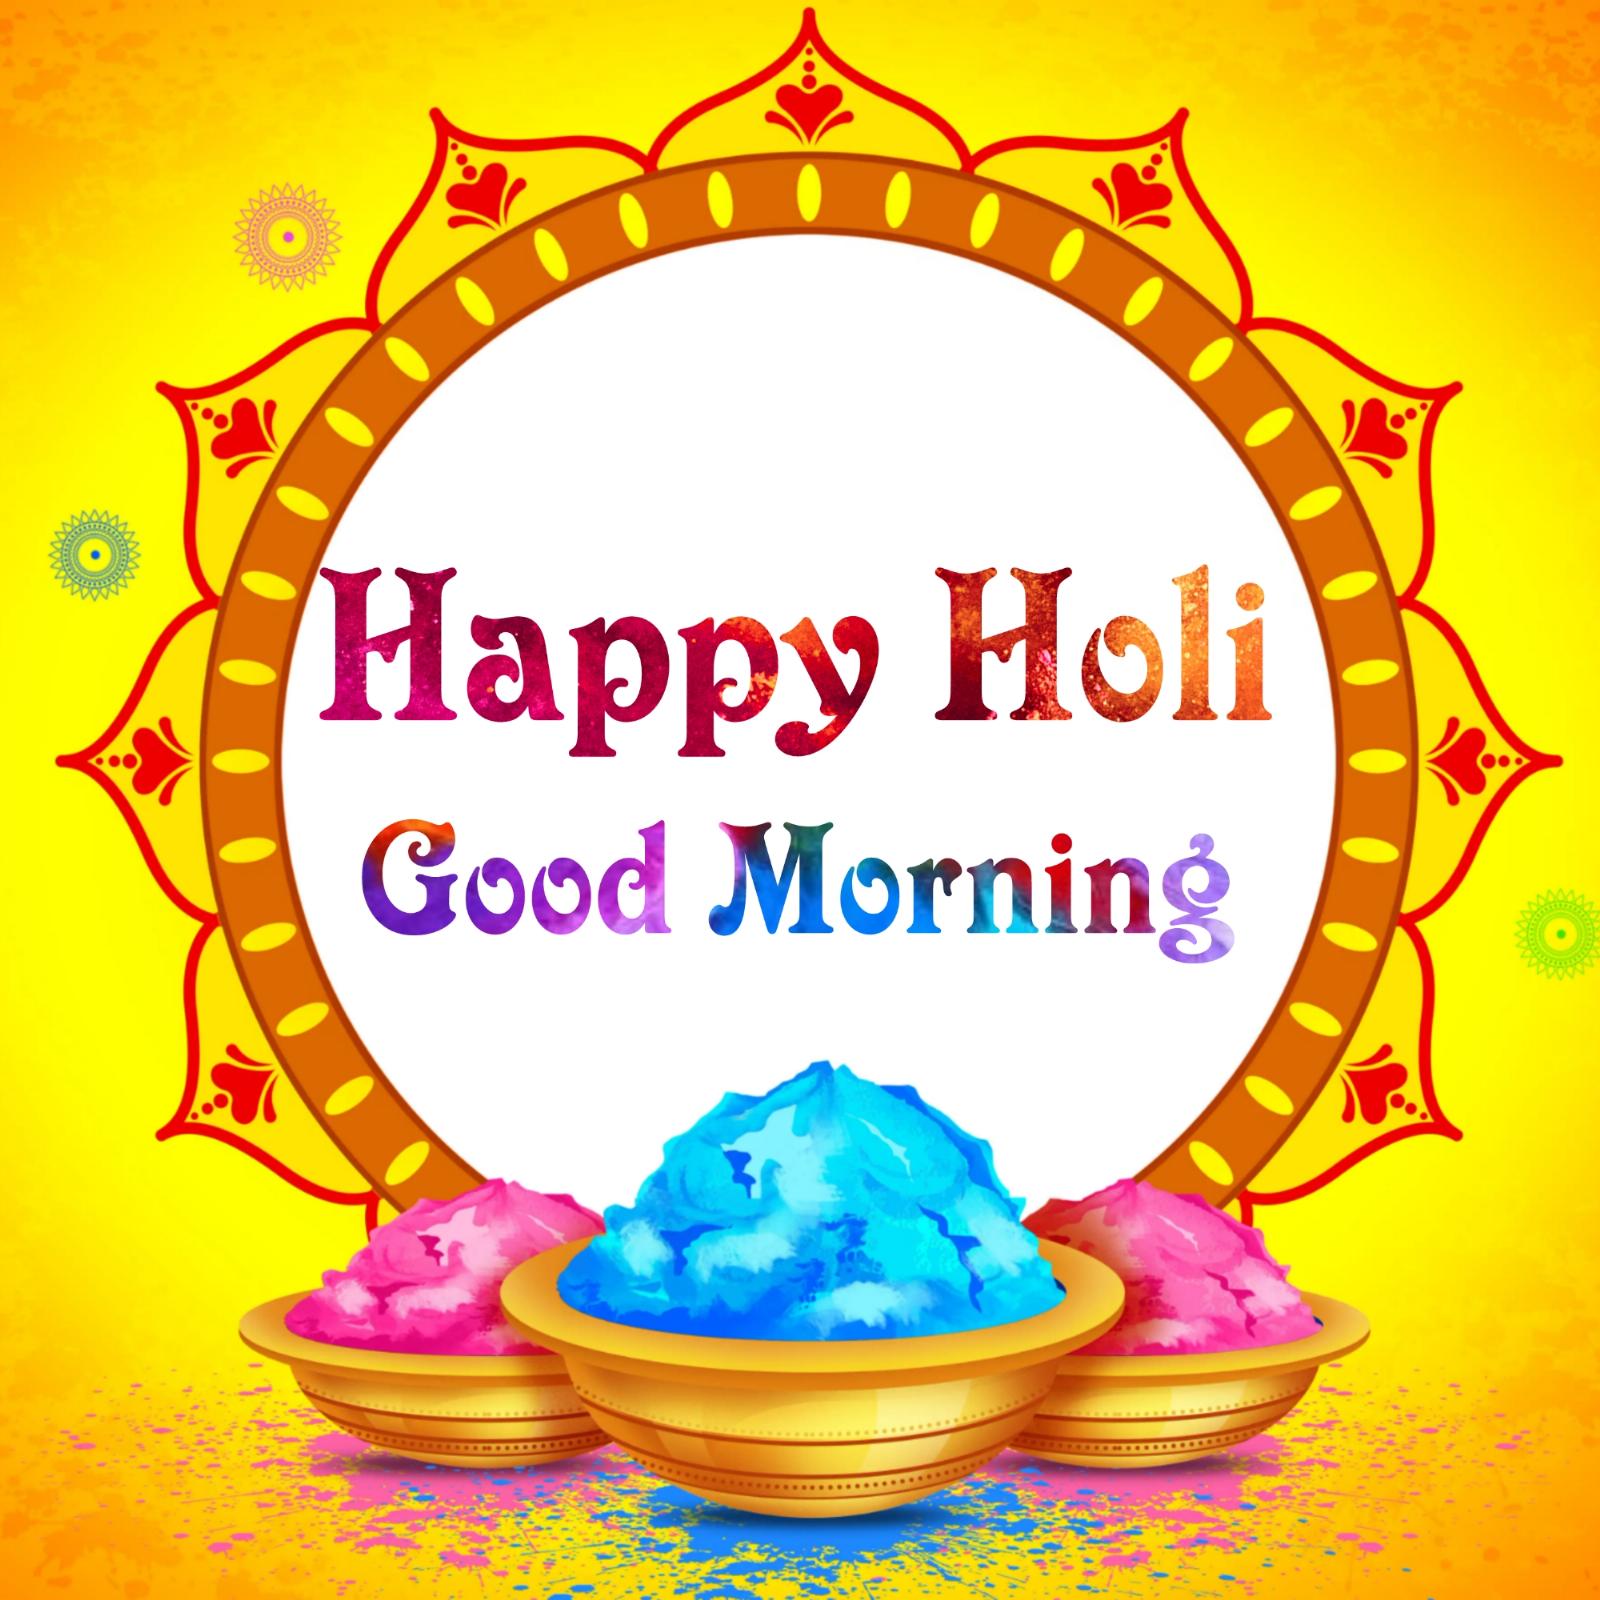 Happy Holi Good Morning Images